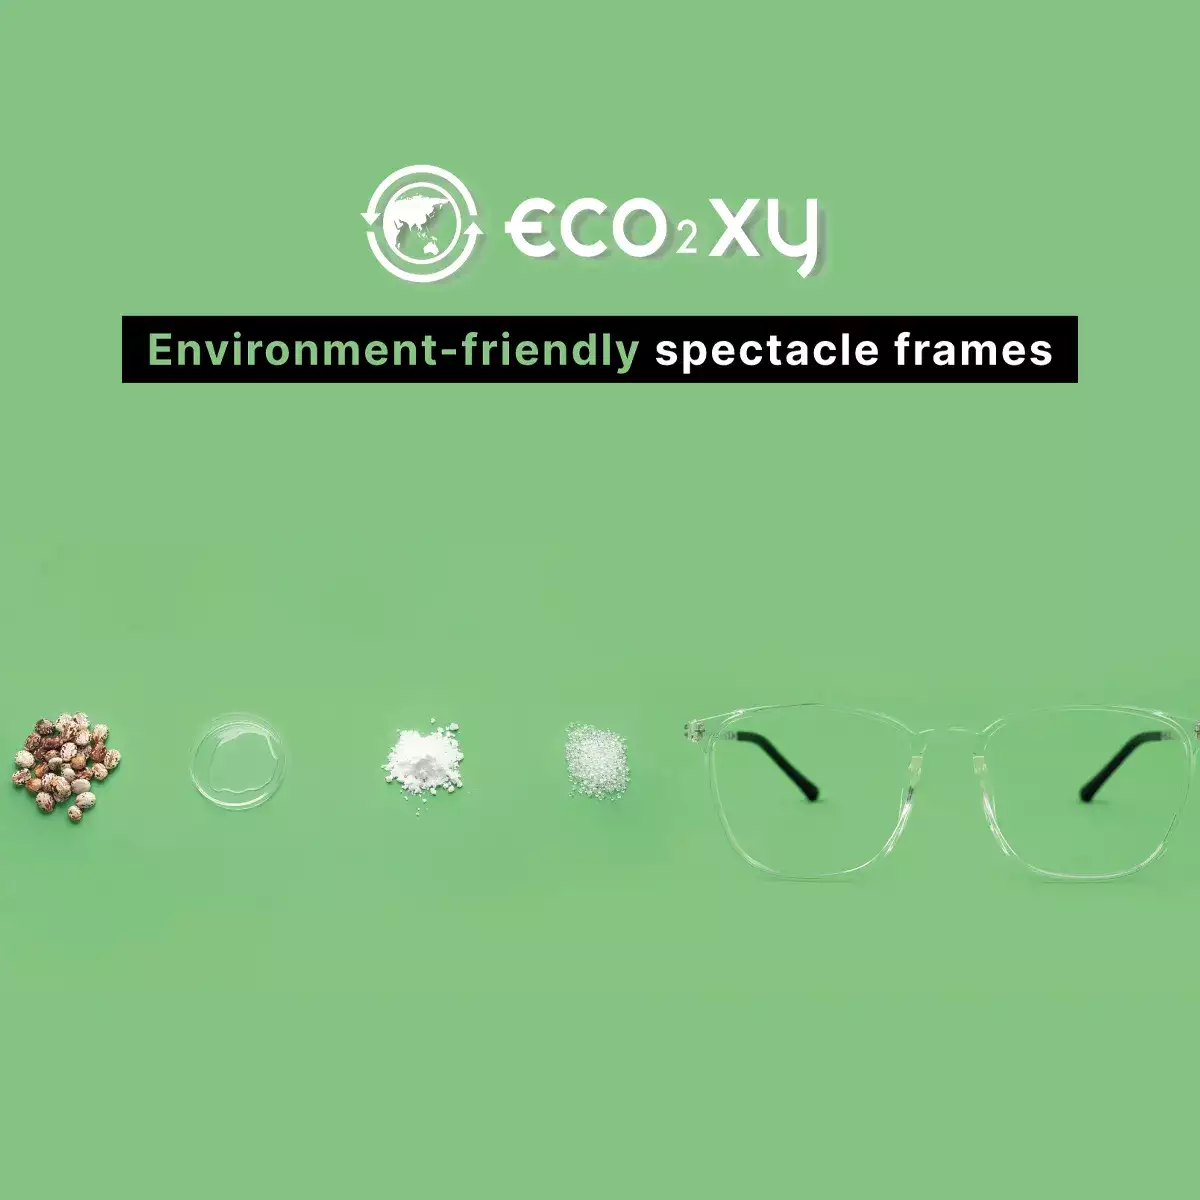 eco2xy